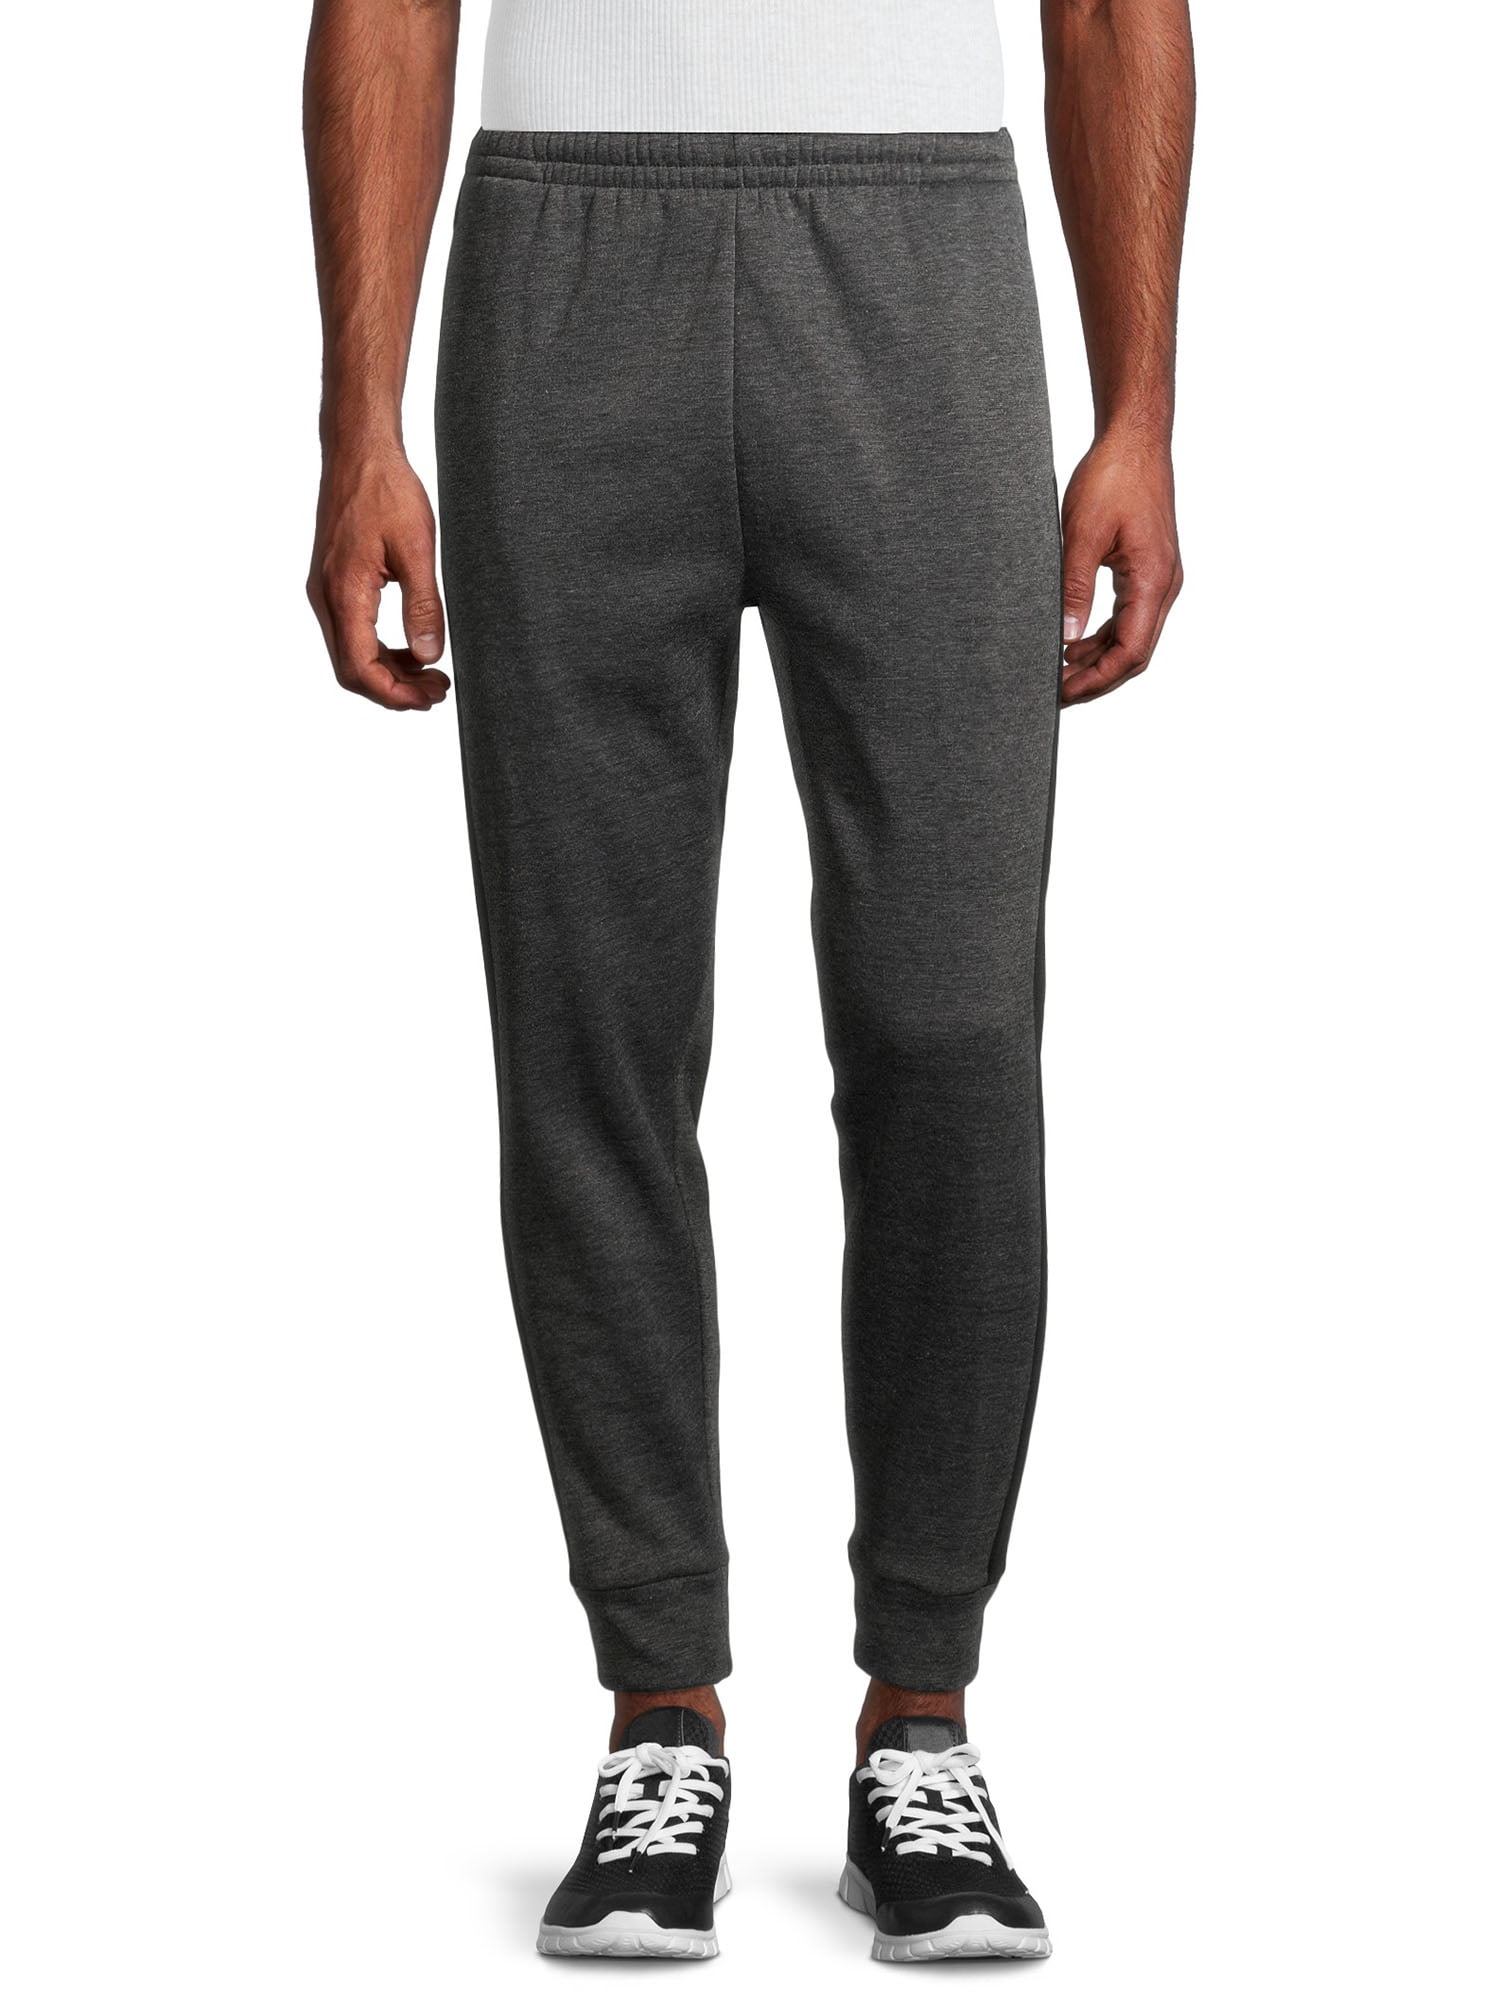 Unipro Men's Fleece Sweatpants with Single Side Stripe - Walmart.com